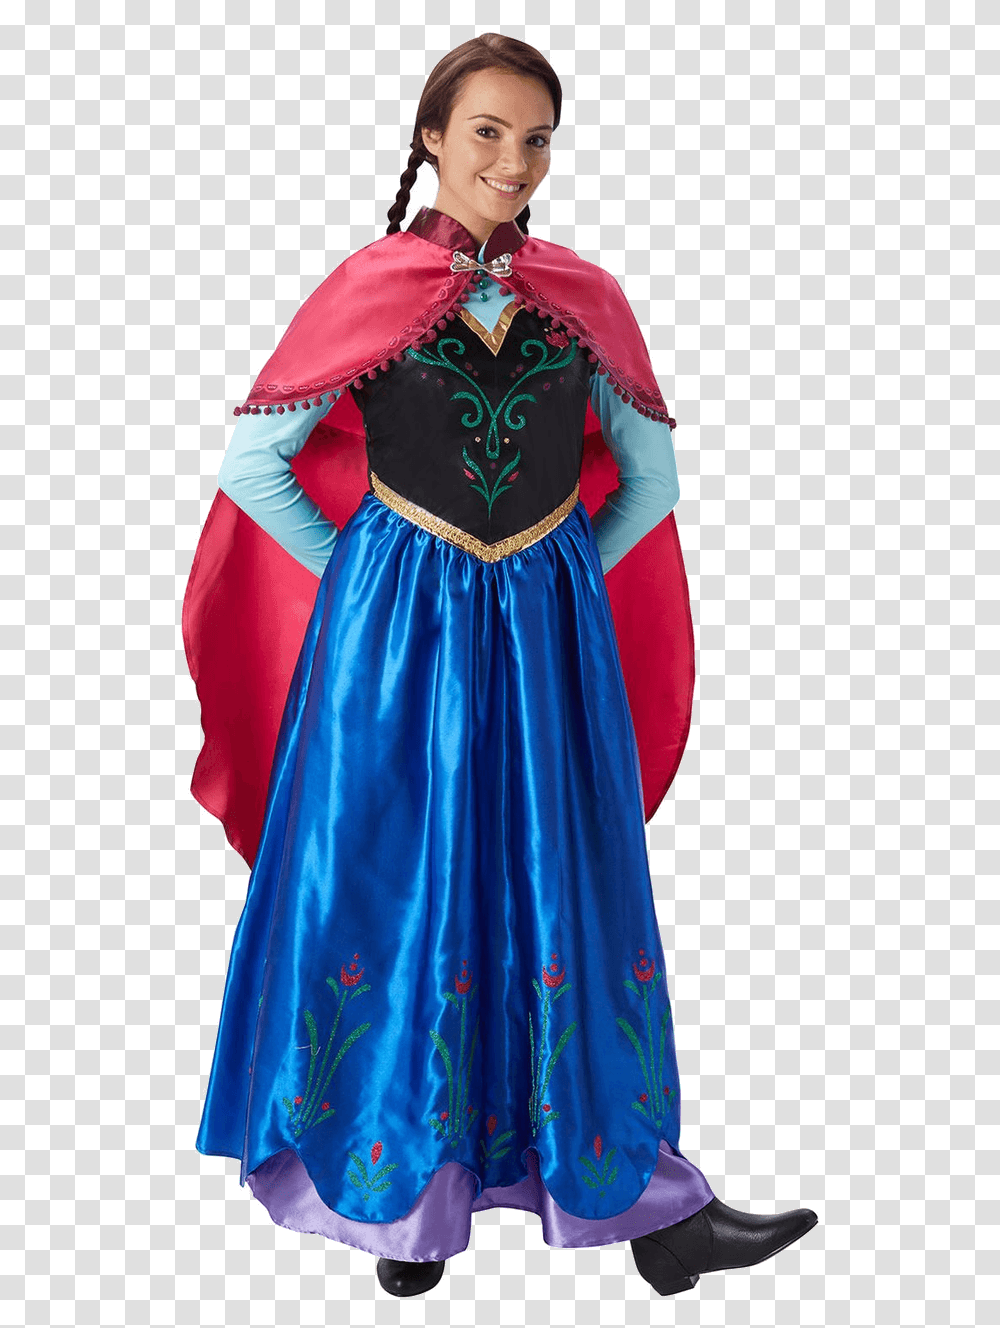 Anna Frozen Costume, Dress, Person, Velvet Transparent Png